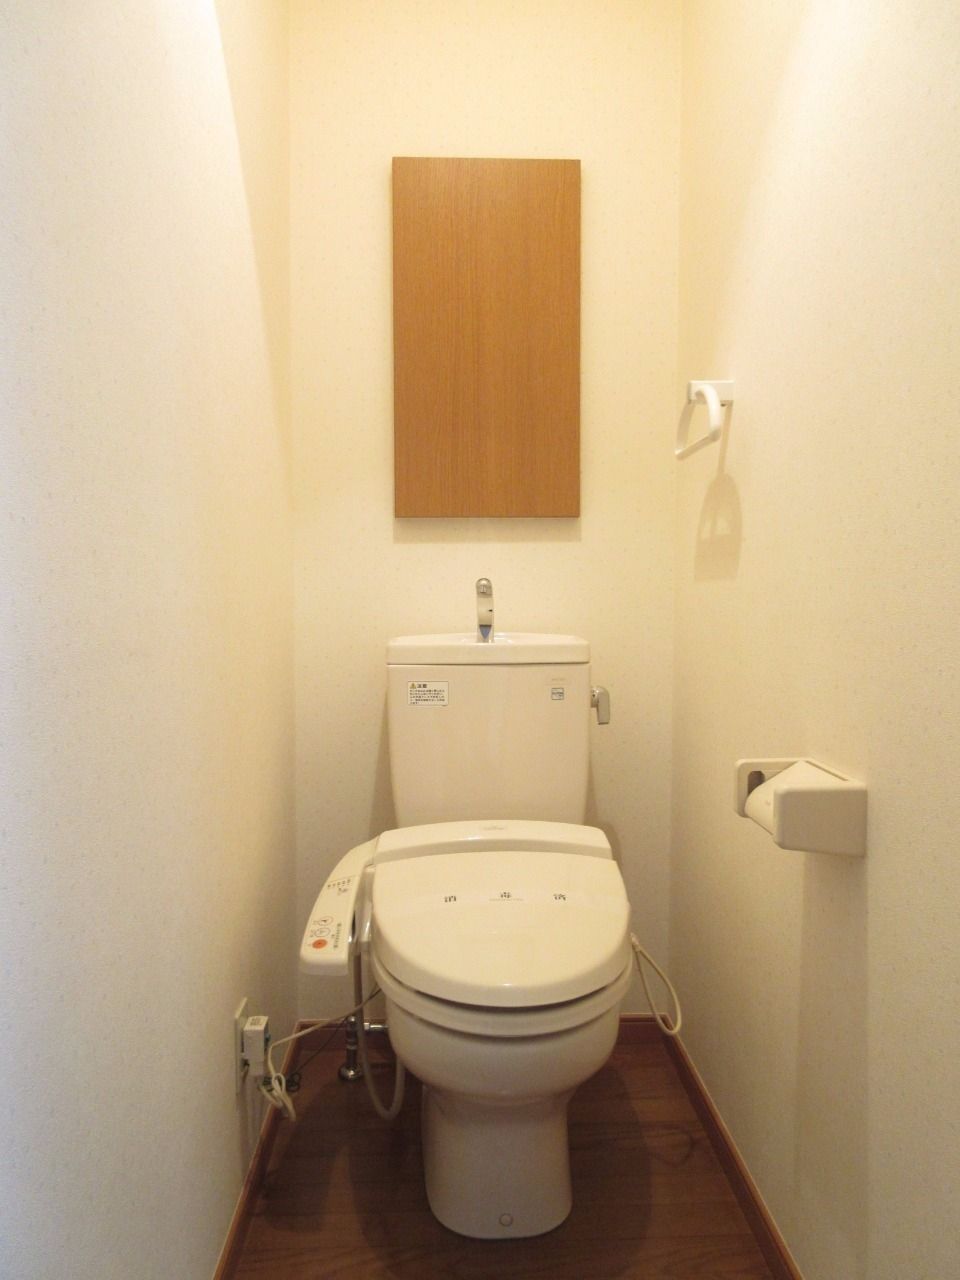 清潔な洗浄機能付温水シャワートイレ